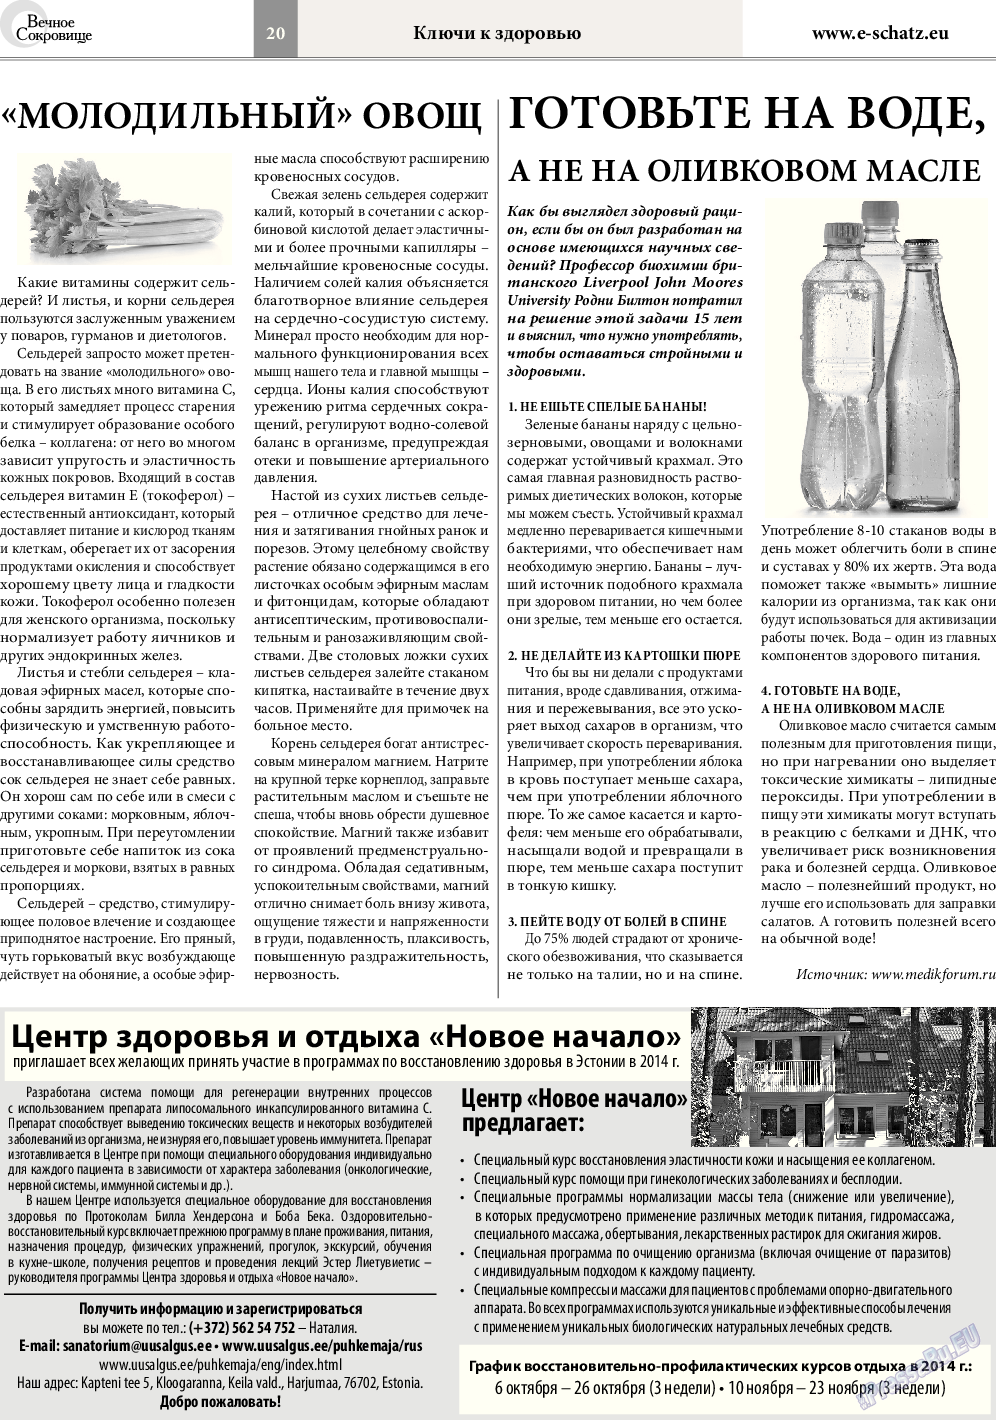 Вечное сокровище (газета). 2014 год, номер 5, стр. 20